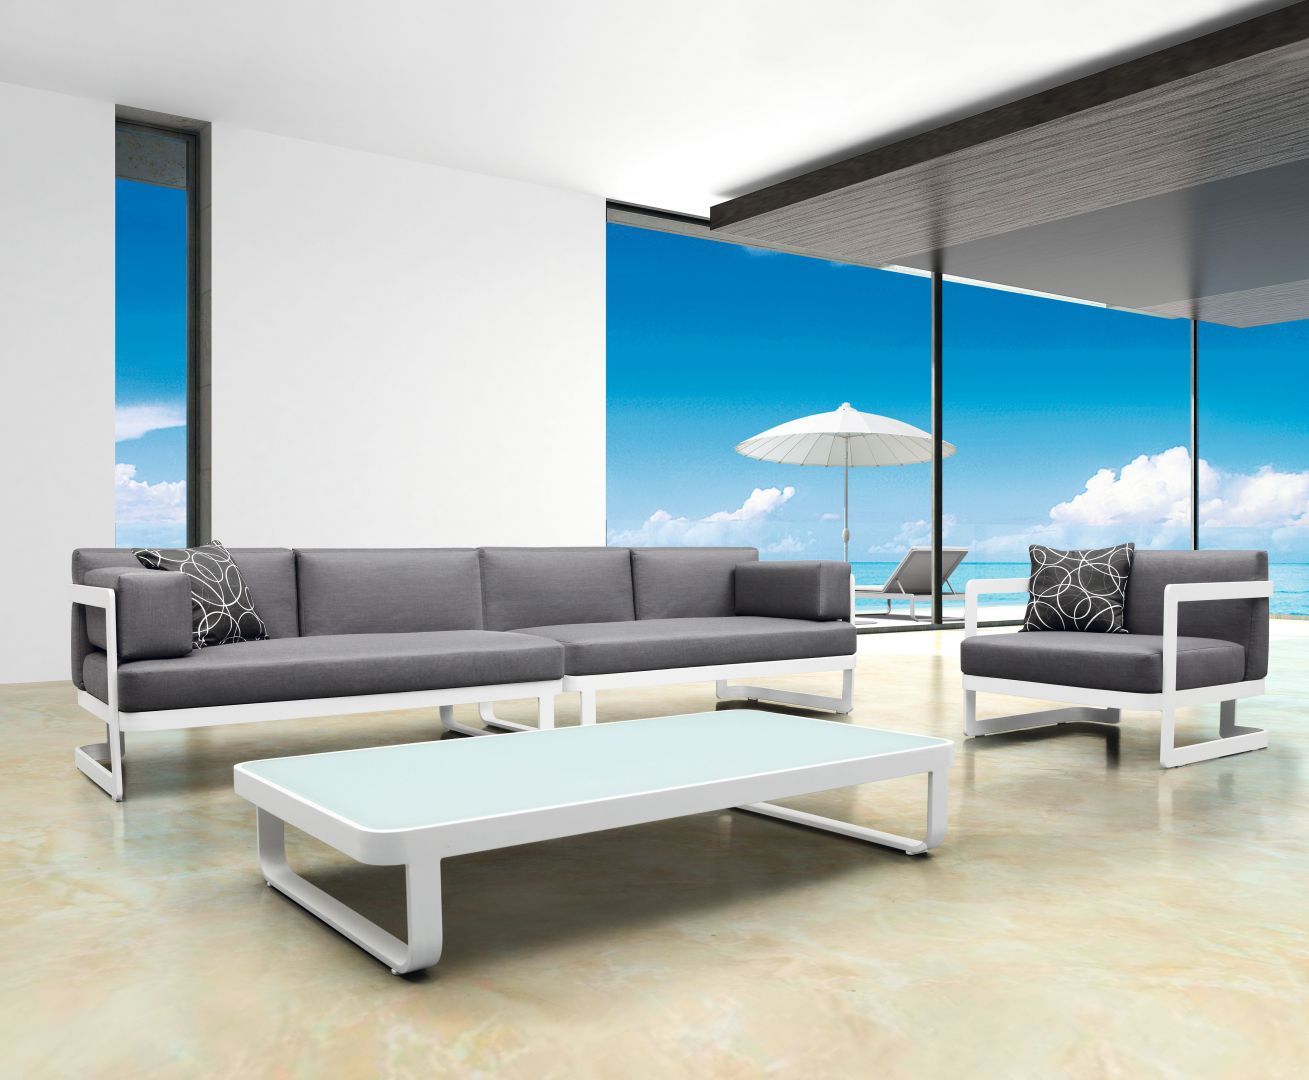 Zestaw wypoczynkowy Ibiza marki Miloo, modułowa sofa i fotel na ramie aluminiowej. Siedzisko i oparcie miękko tapicerowane tkaniną, stolik kawowy z aluminium ze szklanym blatem. Ibiza to meble modułowe. Fot. House&More